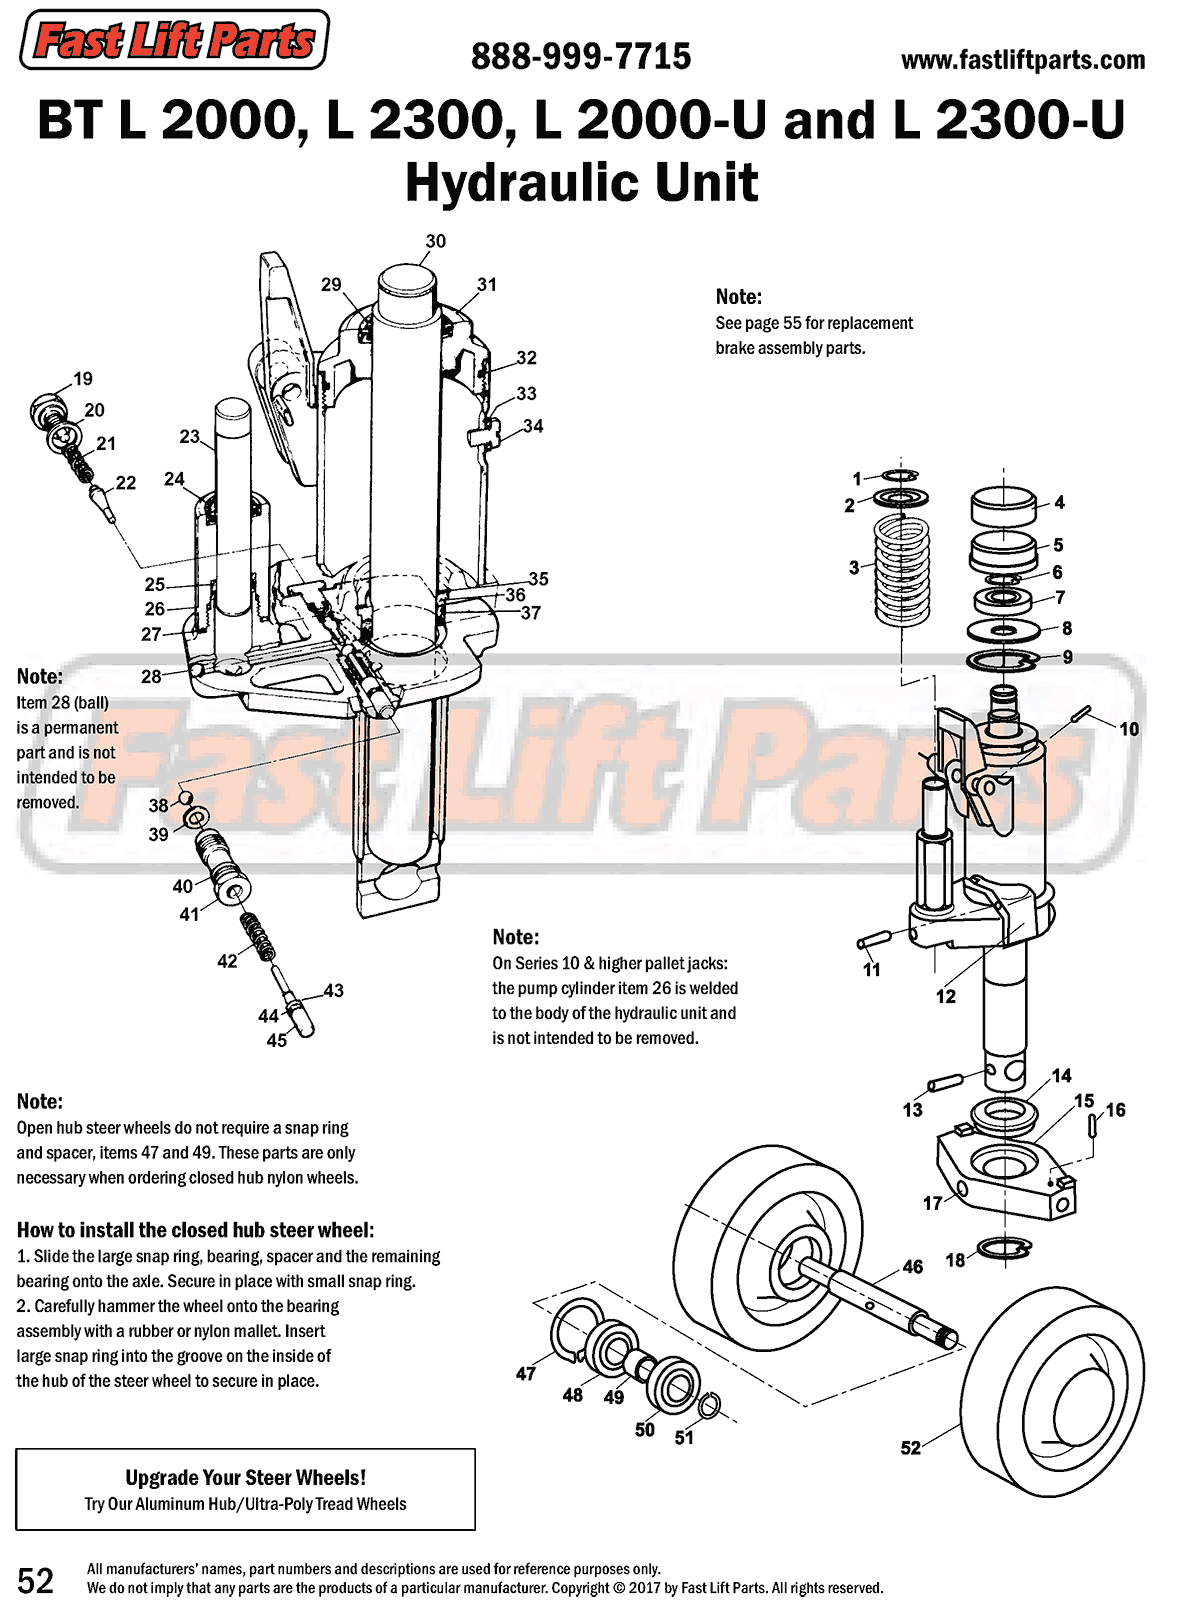 BT L 2000-U/L 2300-U Hydraulic Unit Line Drawing